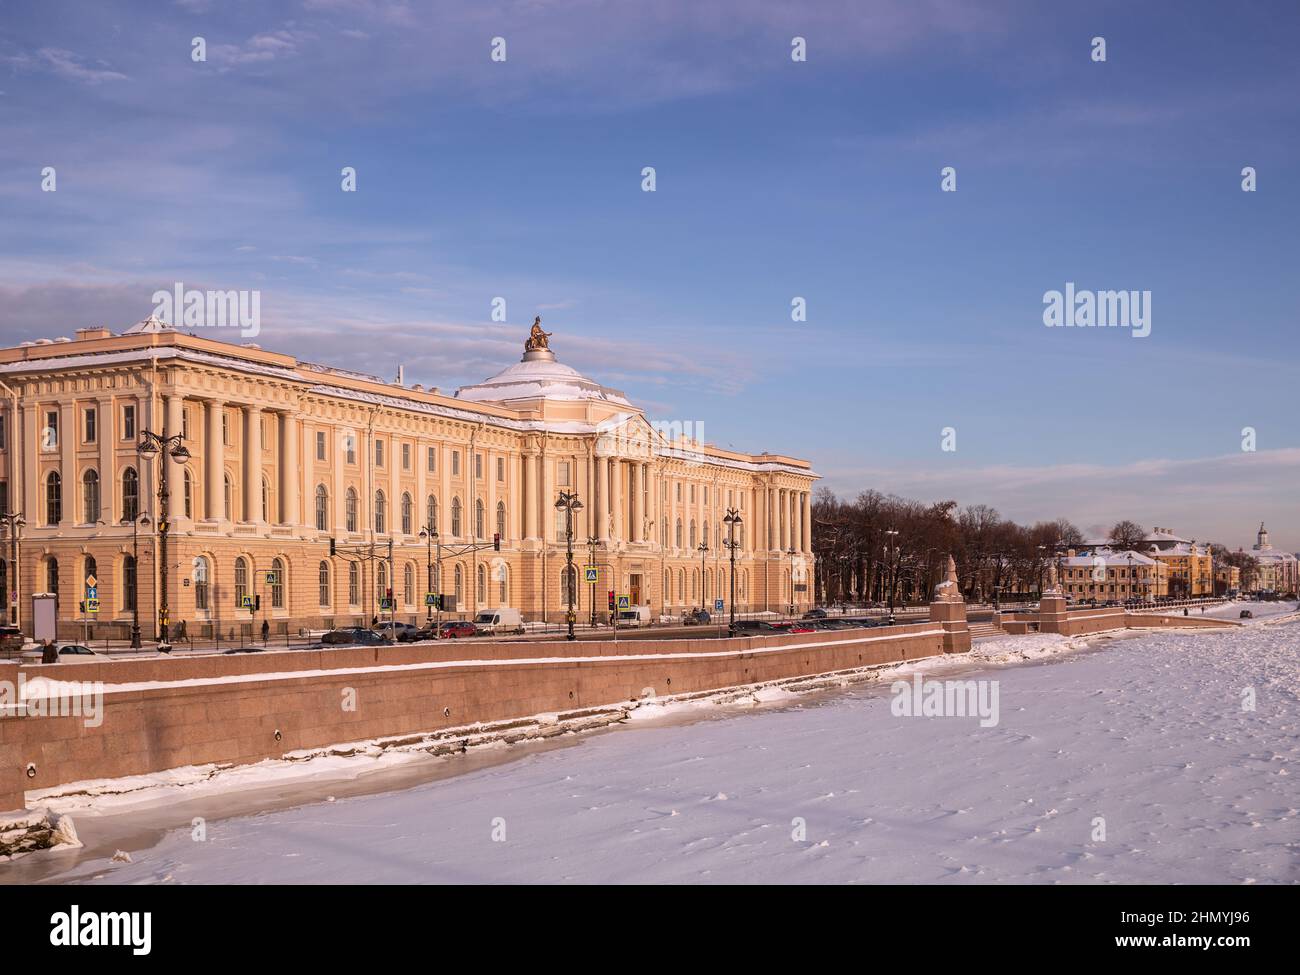 Winter in St. Petersburg, Blick auf die Akademie der Künste und das Universitätsufer. Frostiger, sonniger Tag, der Fluss Neva ist mit Eis und Schnee bedeckt Stockfoto